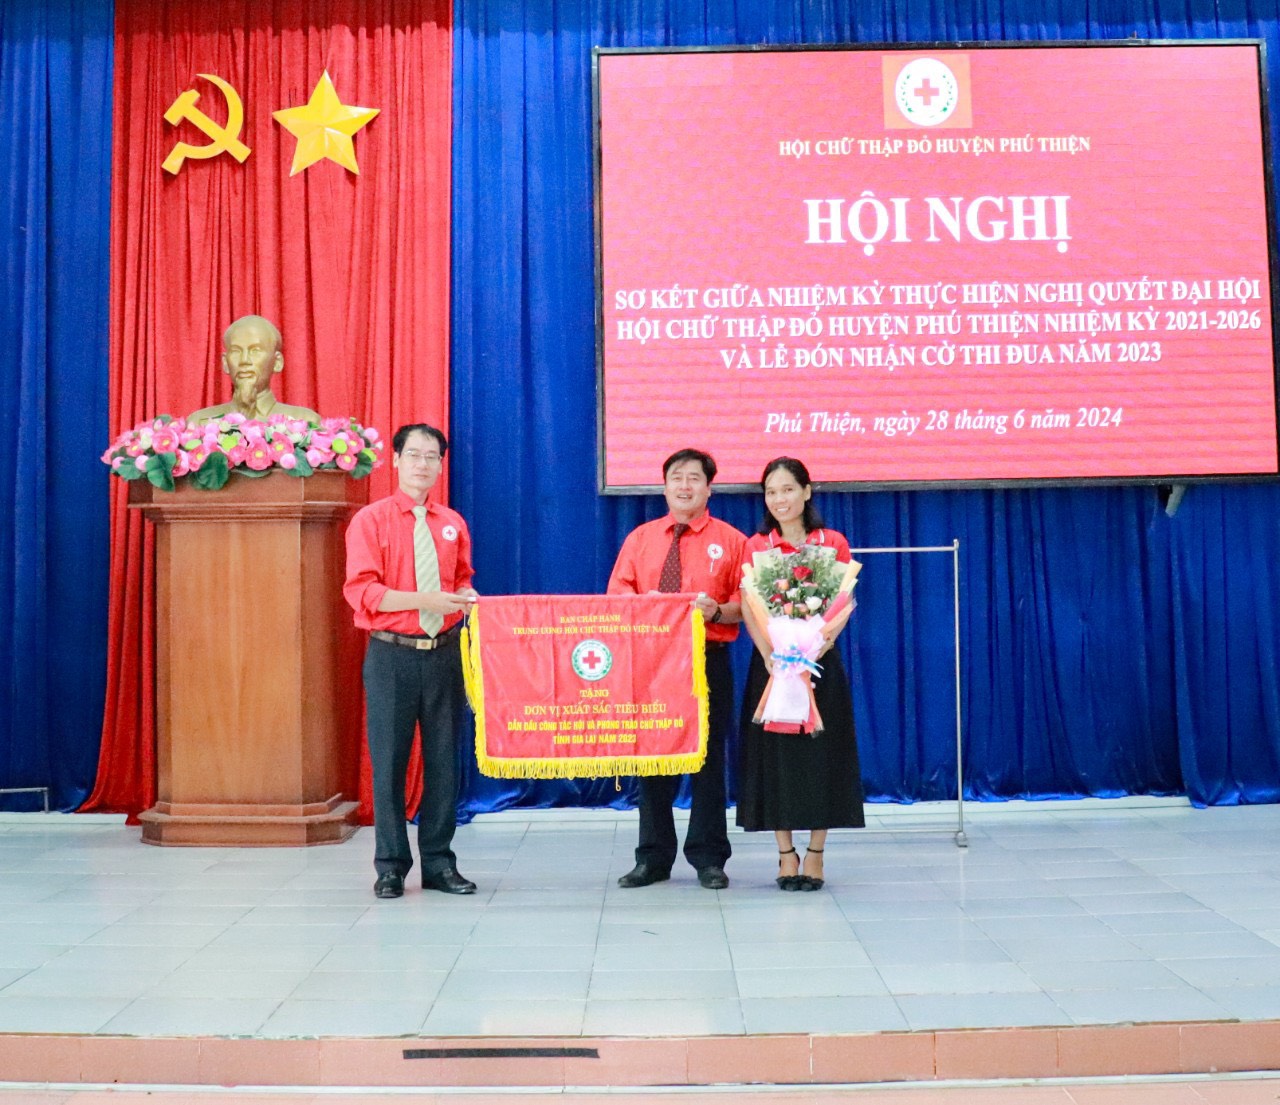 Article Phú Thiện: Tổ chức Hội nghị sơ kết giữa nhiệm kỳ 2021-2026 và Đón nhận Cờ thi đua của Trung ương Hội Chữ thập đỏ Việt Nam